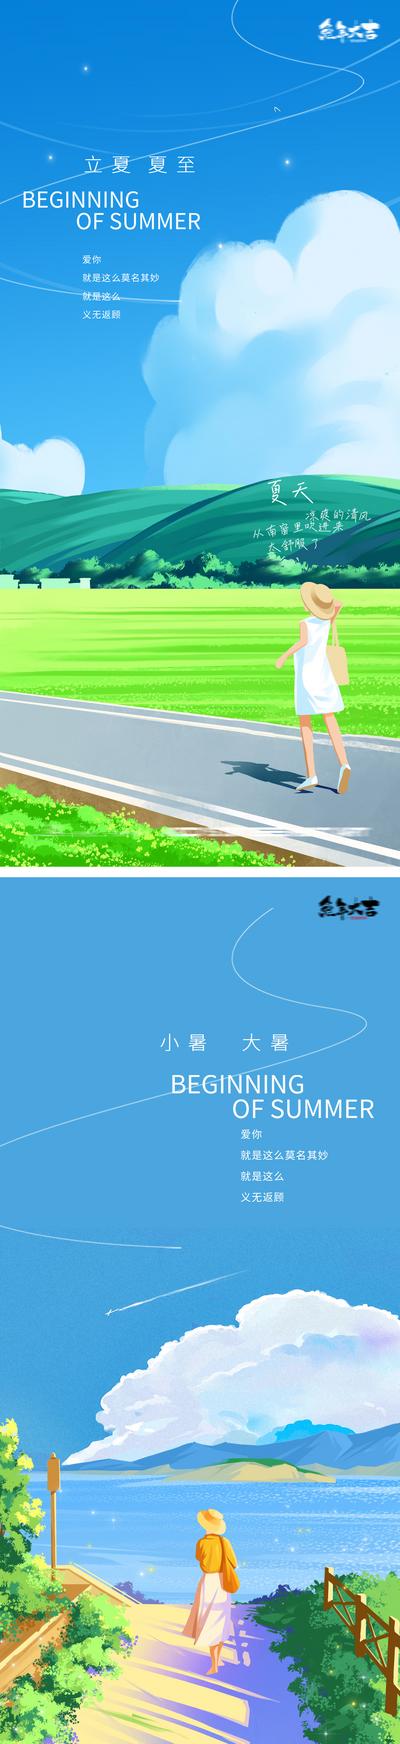 南门网 海报 二十四节气 立夏 夏至    大海 公园 河边  蓝天 插画